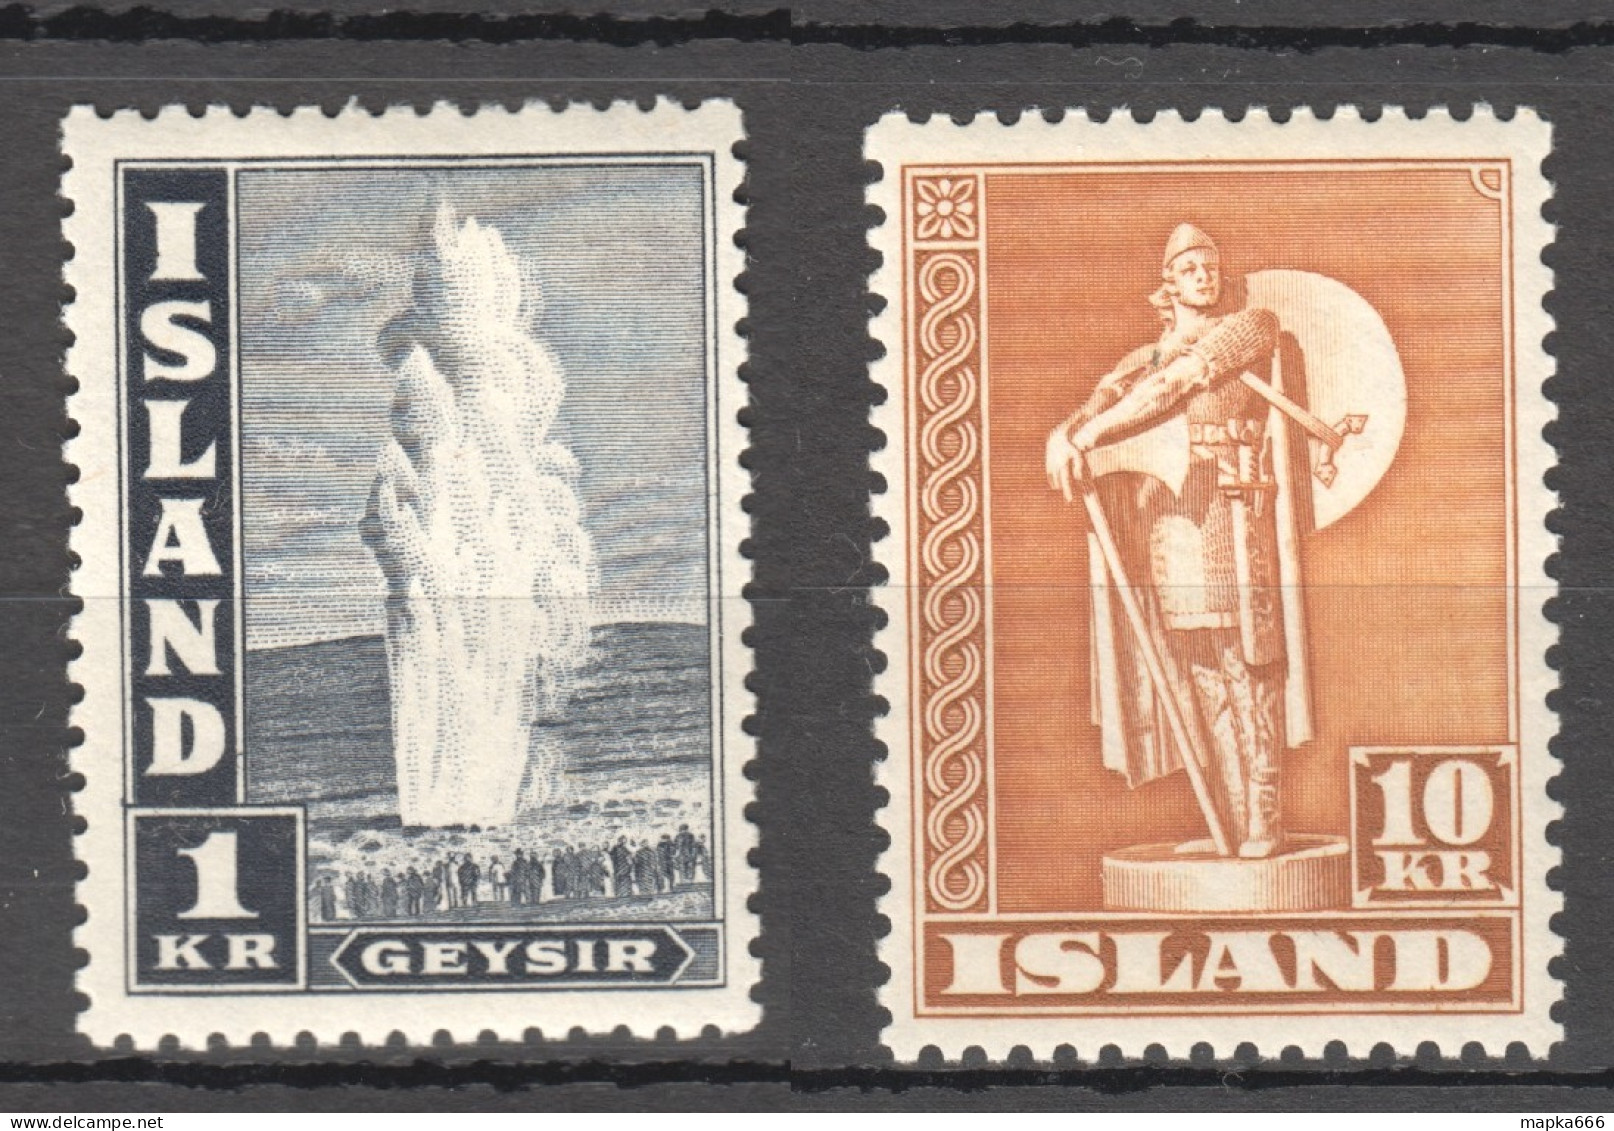 Sp667-668 1945 Iceland Geyser Statue Michel #239-40C 26 Euro 2St Mnh,Lh - Neufs